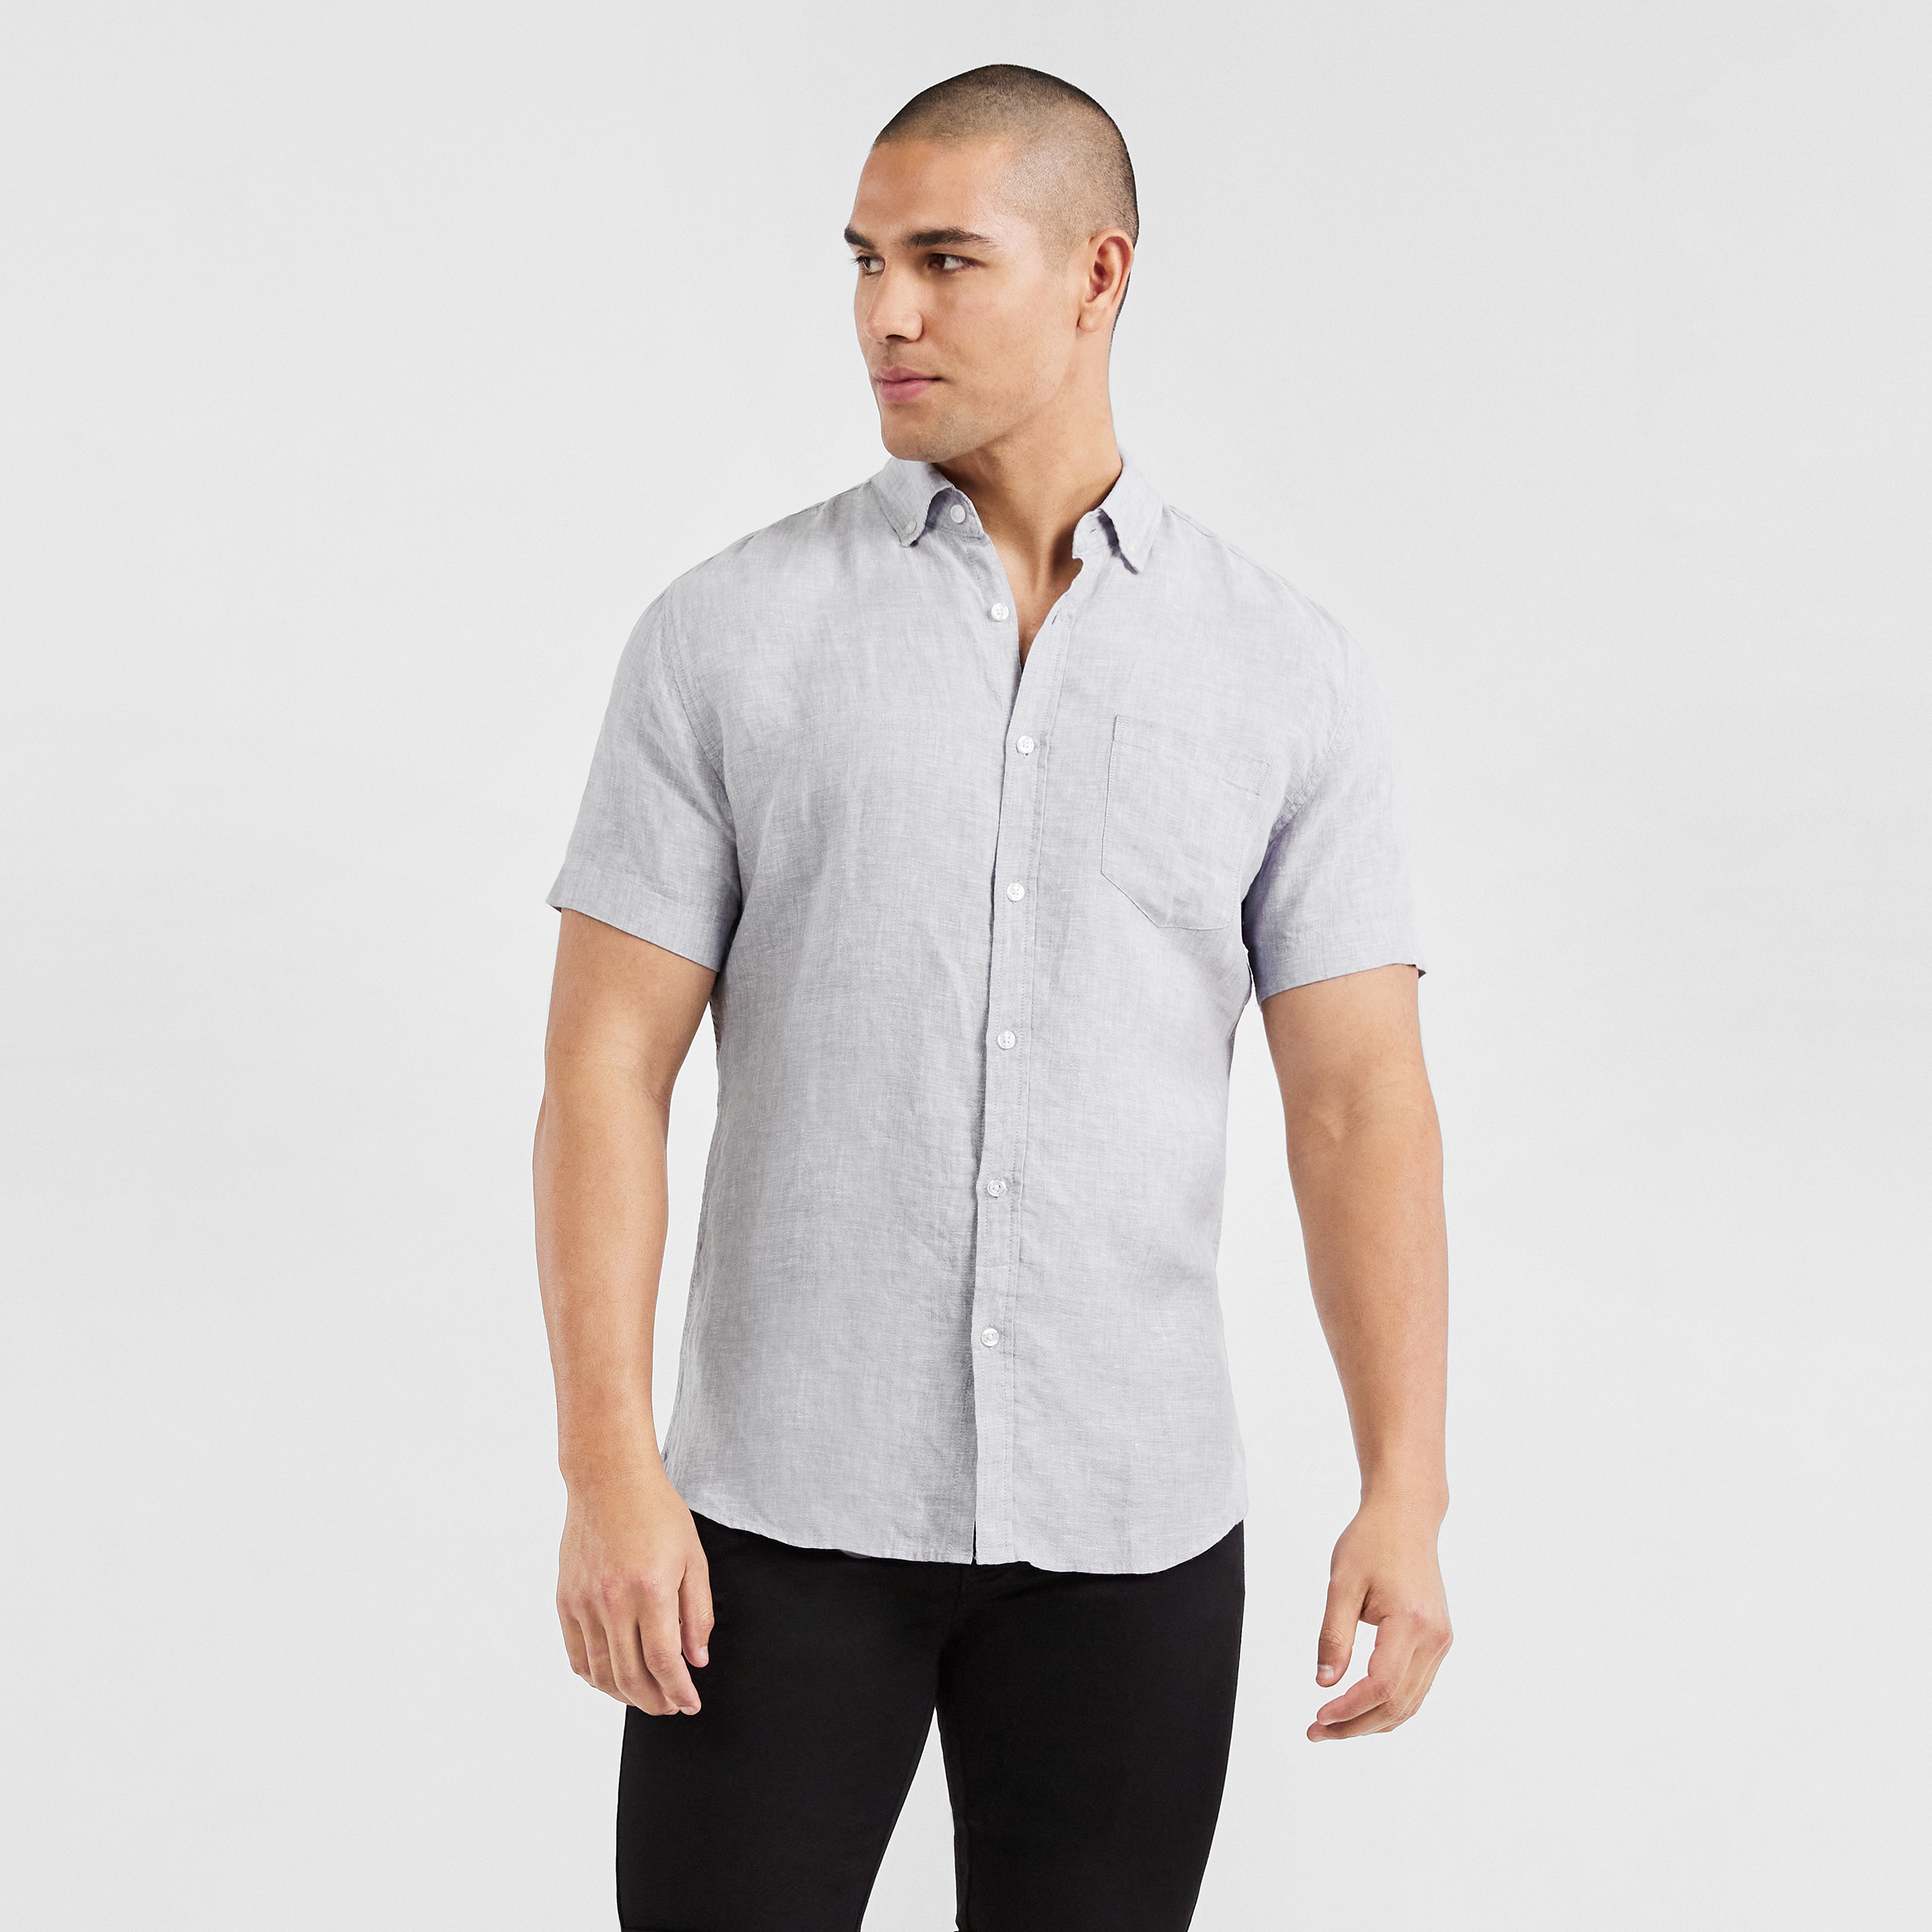 Short-sleeve cotton shirt Farfetch Kleidung Tops & Shirts Shirts Kurze Ärmel 